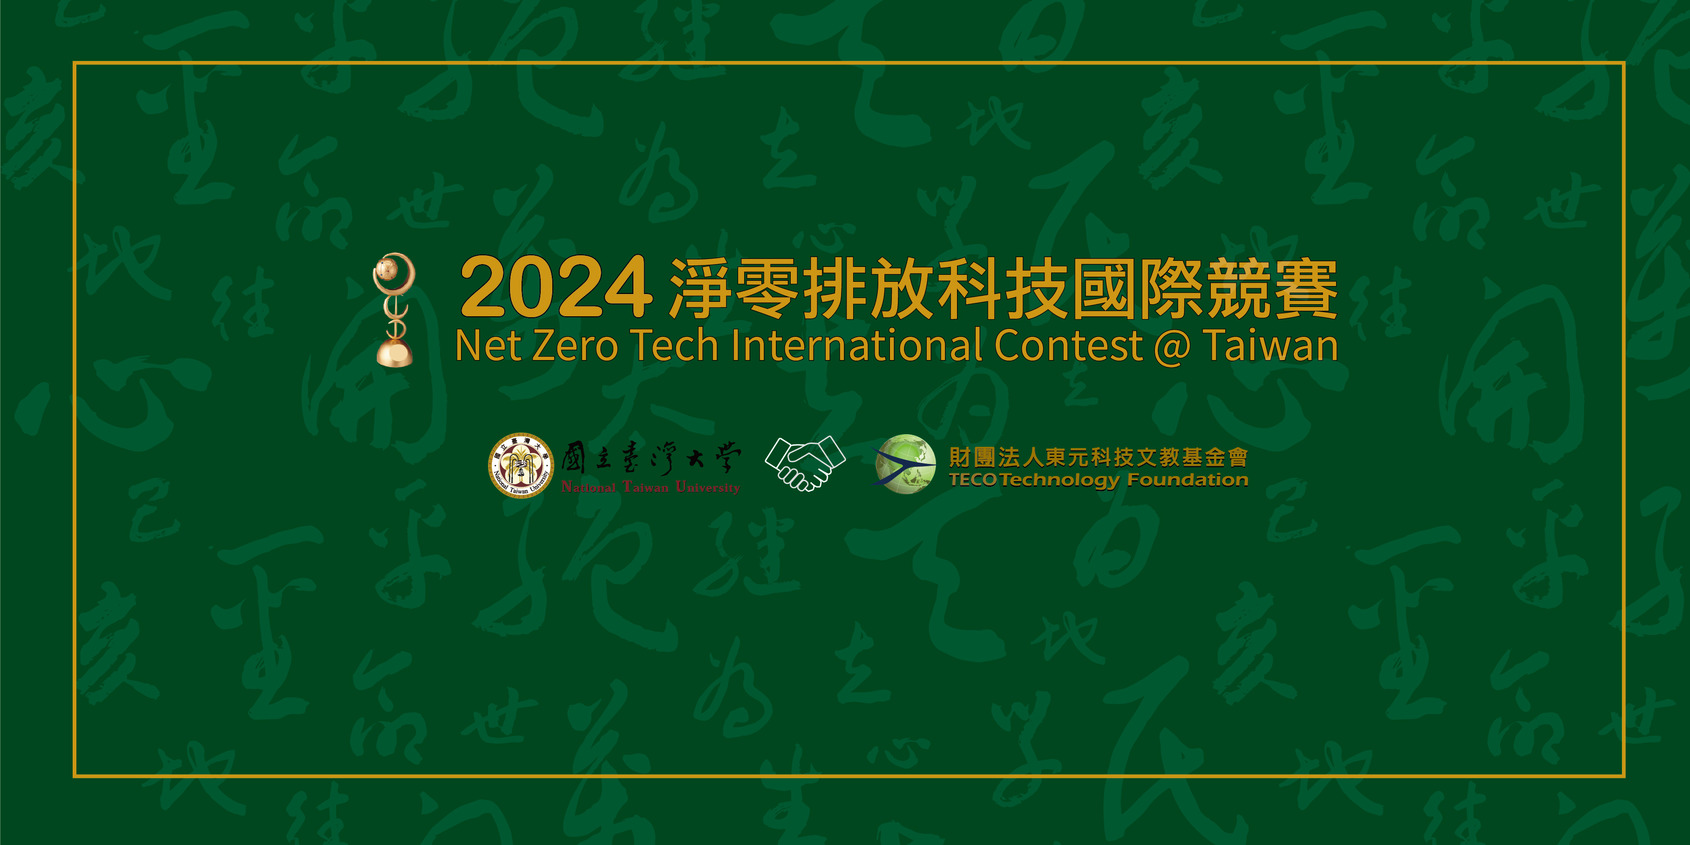 【【轉知】2024淨零排放科技國際競賽@ Taiwan自3月1日起受理報名】